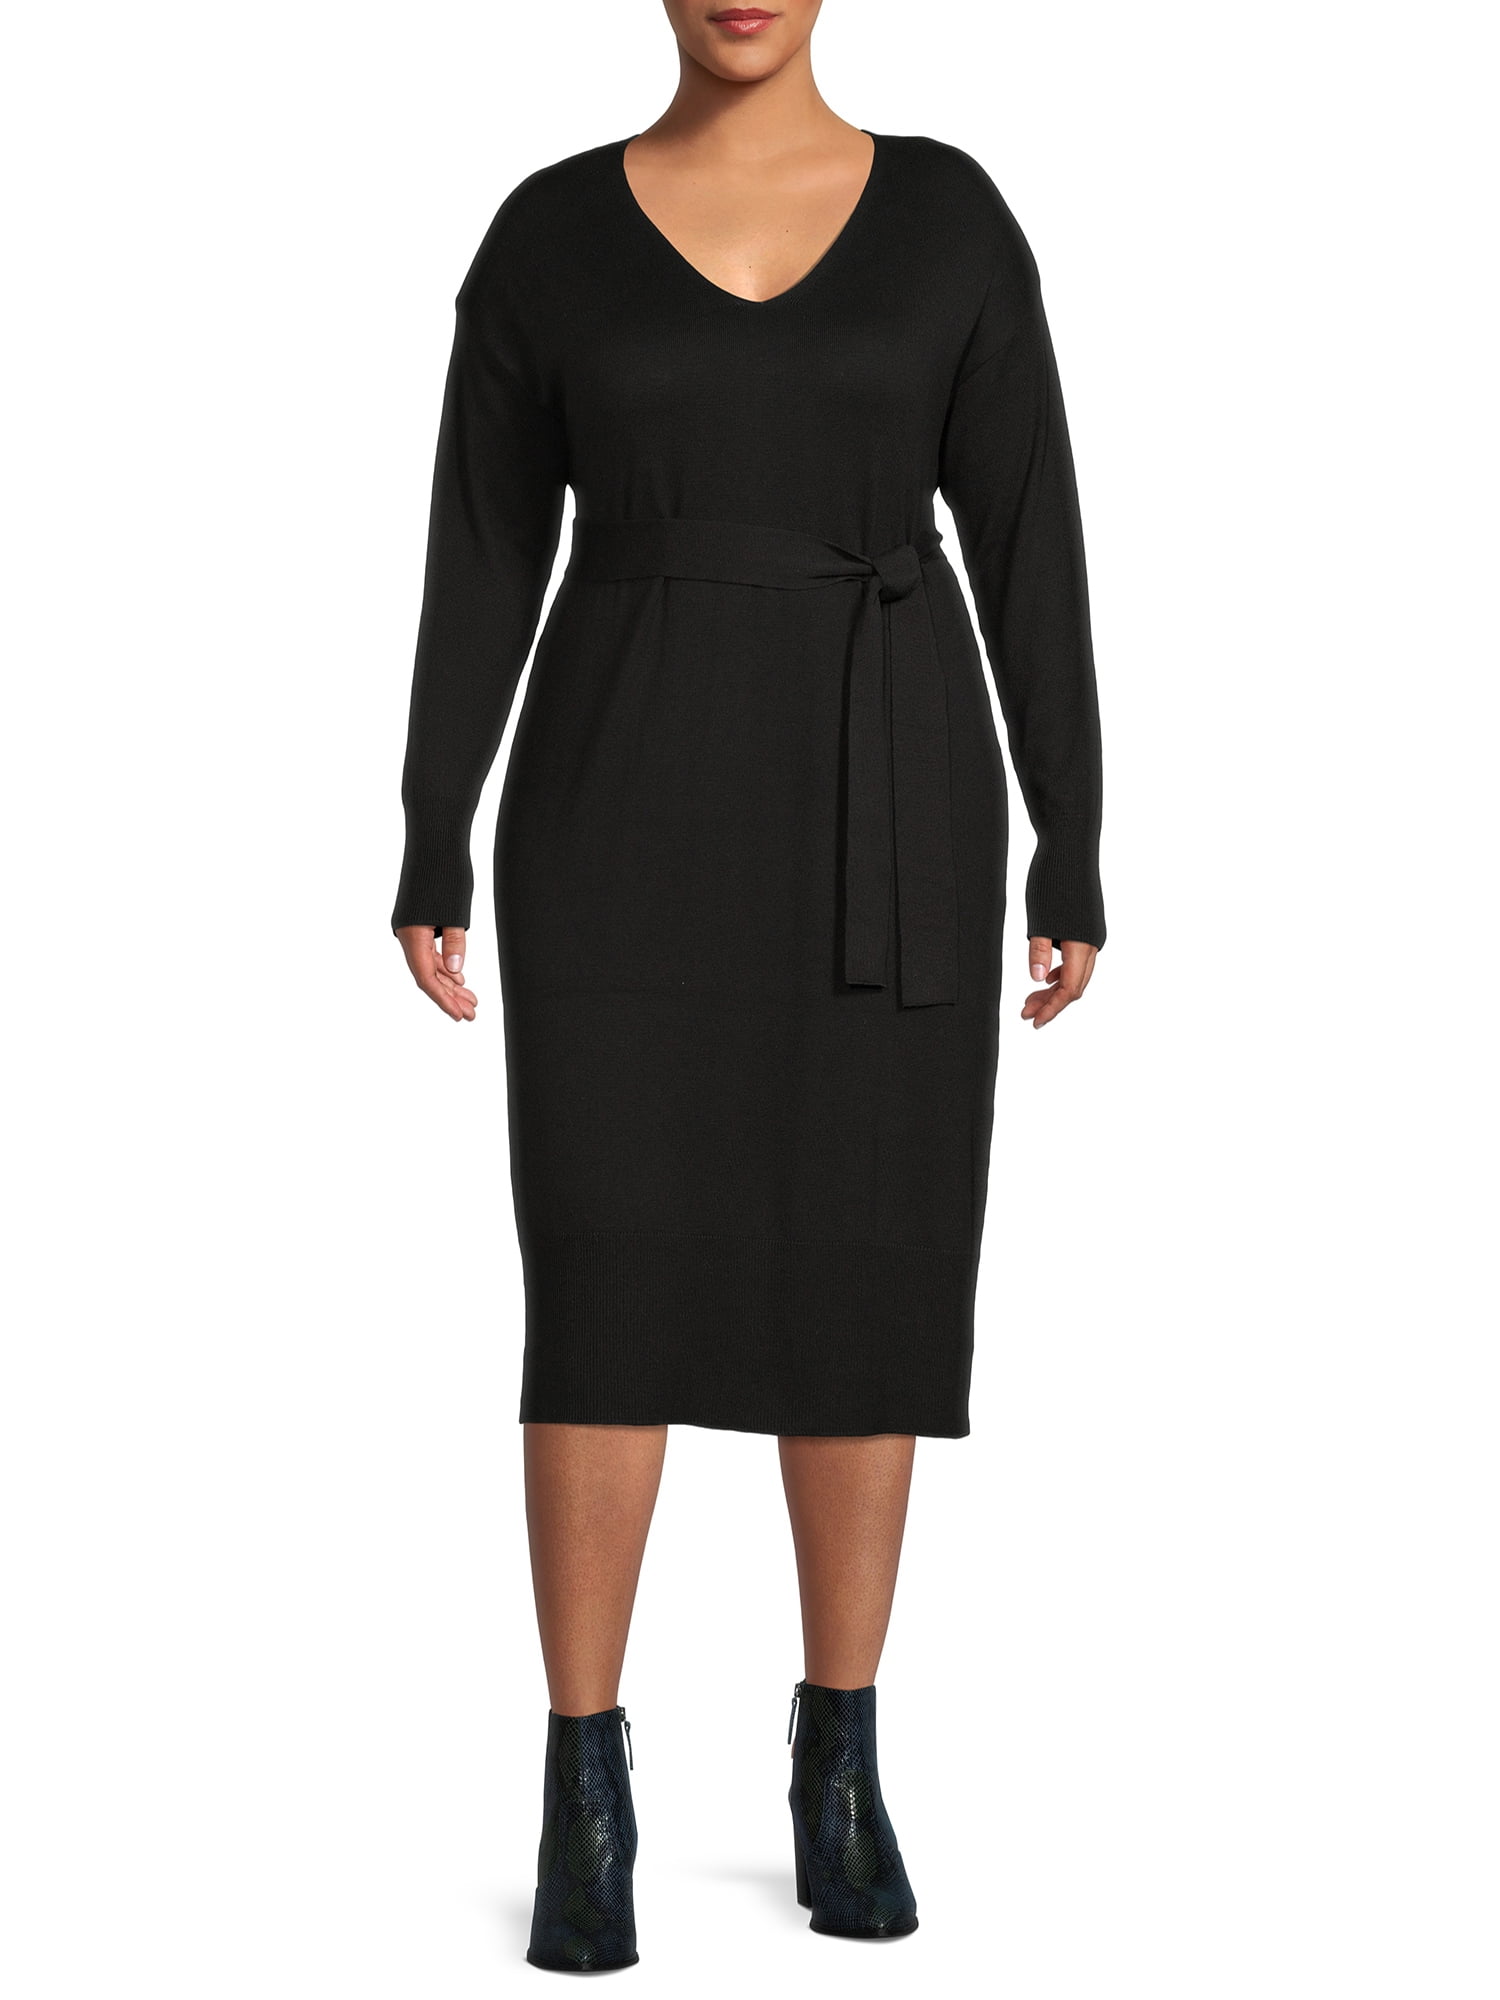 Terra & Sky Women's Plus Size Belted Sweater Dress - Walmart.com